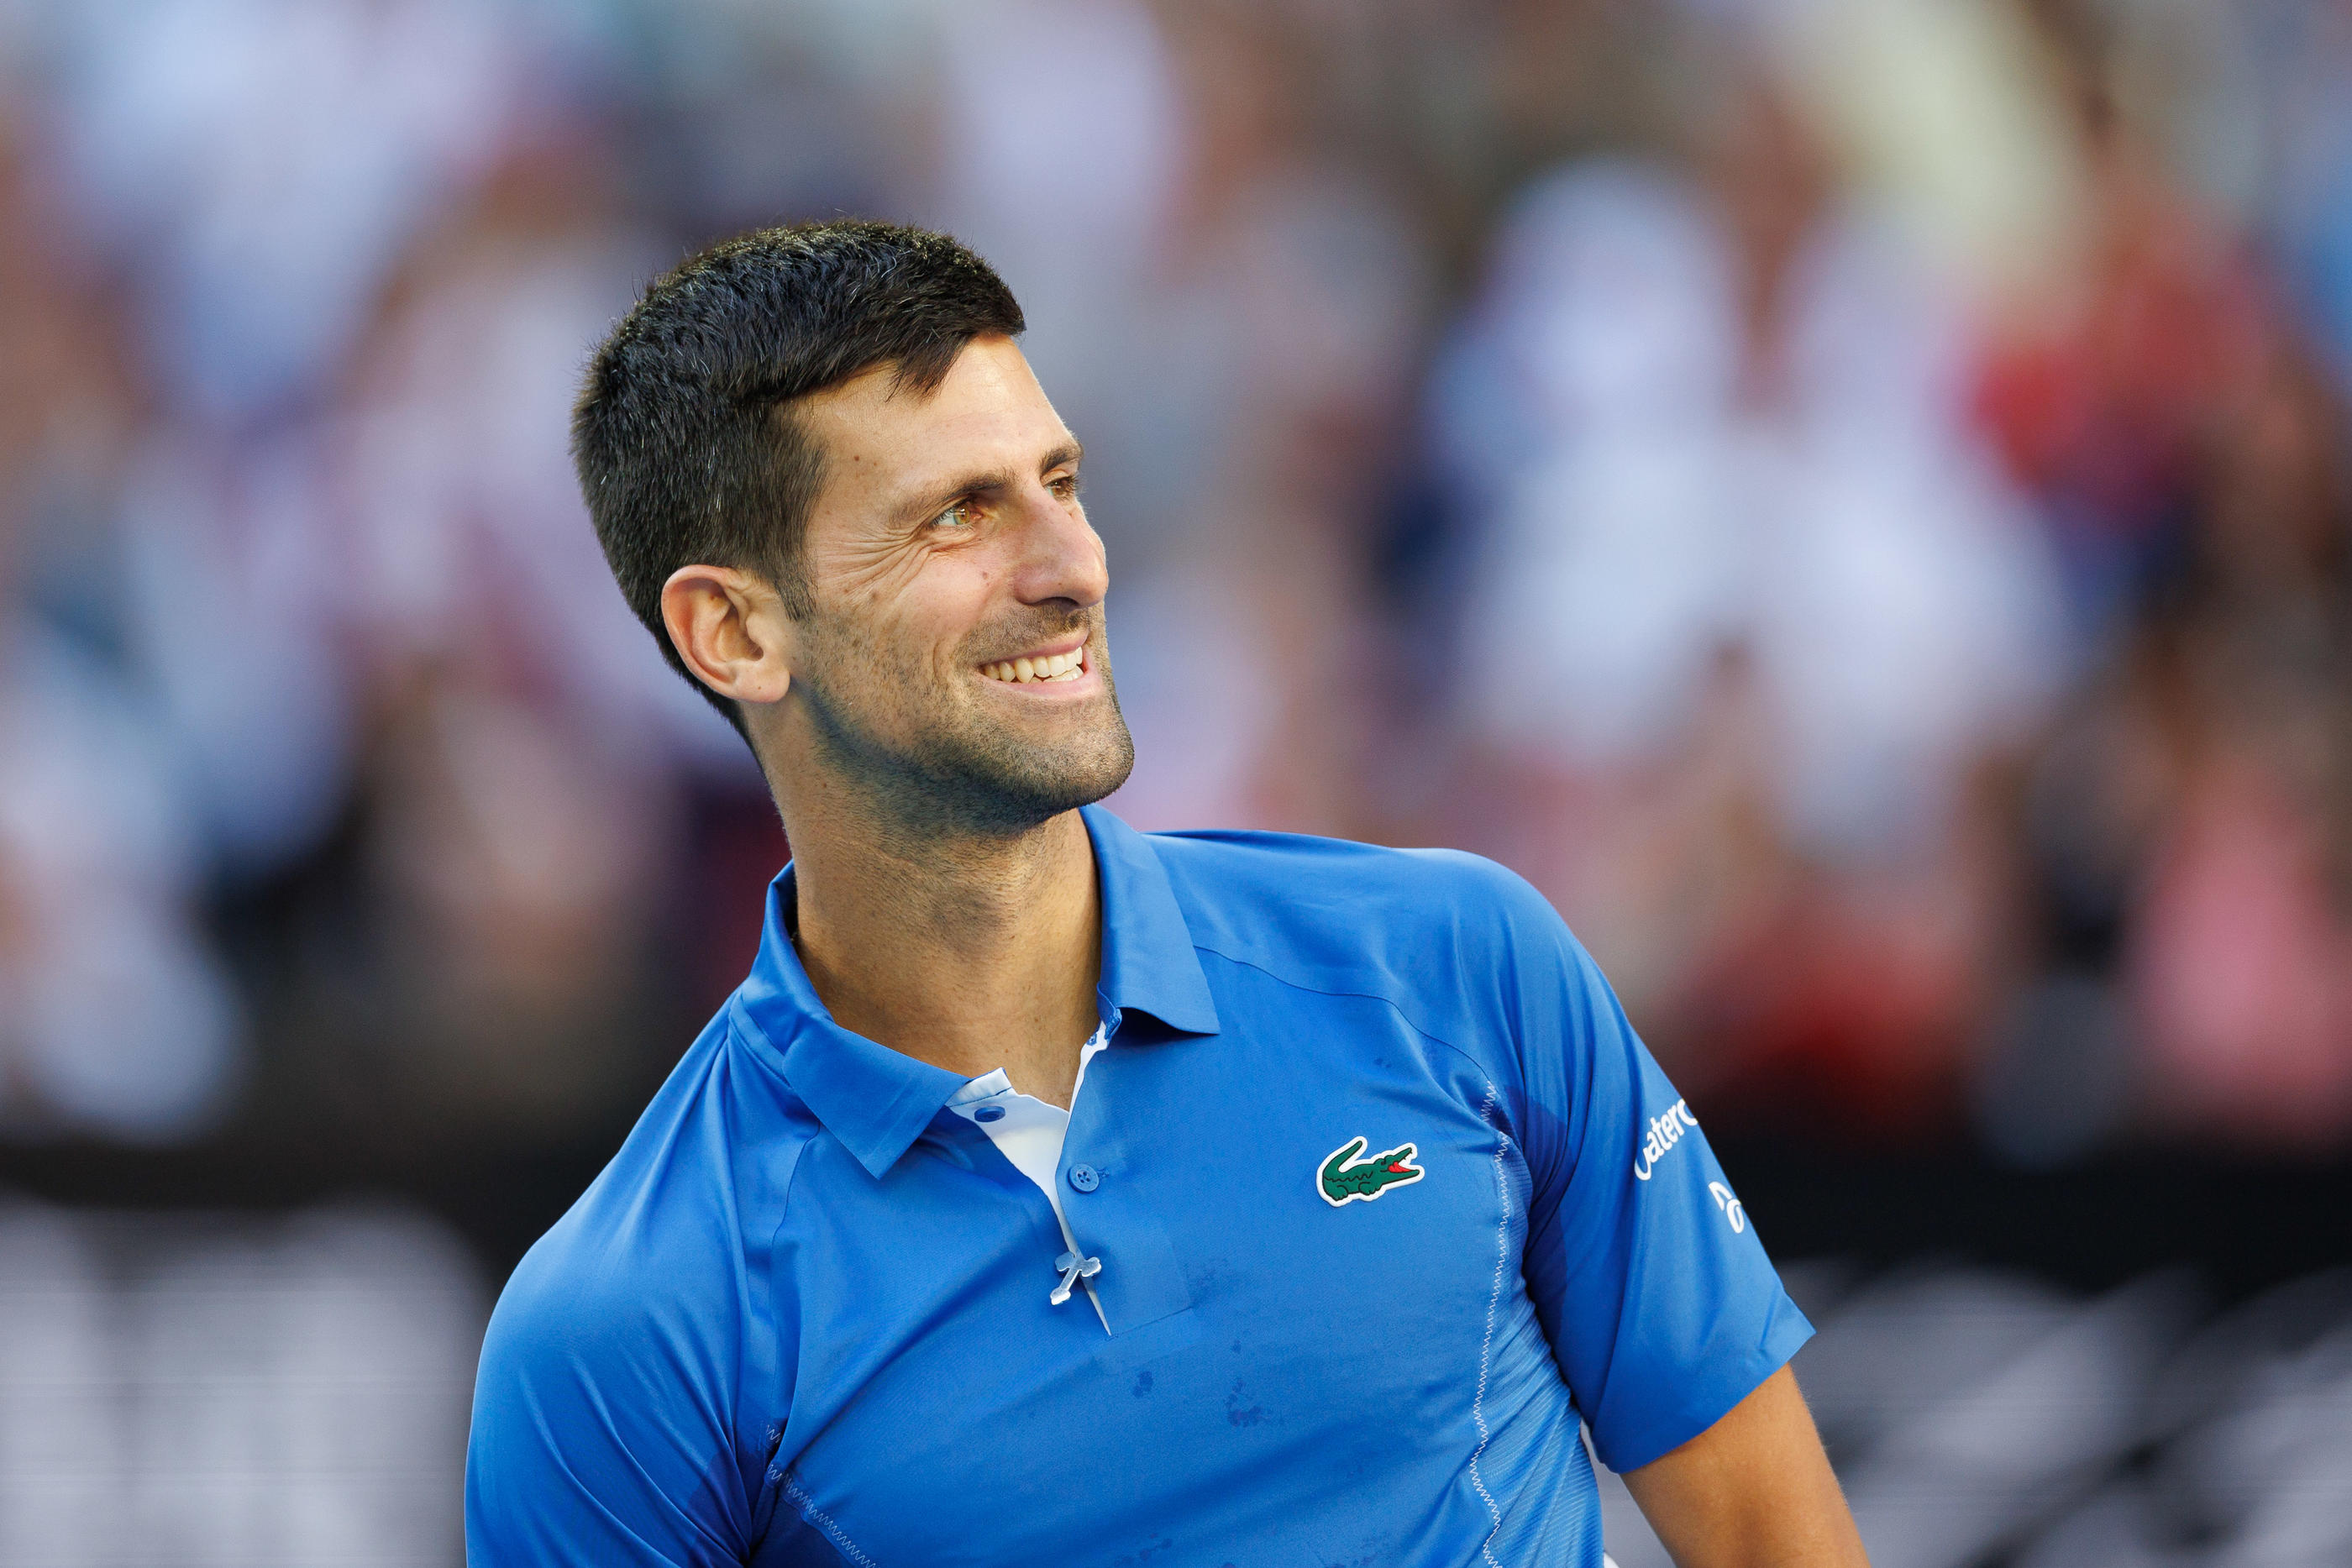 Tennis : balle de match sauvée, polo déchiré… La folle victoire de Djokovic  contre Alcaraz à Cincinnati - Le Parisien